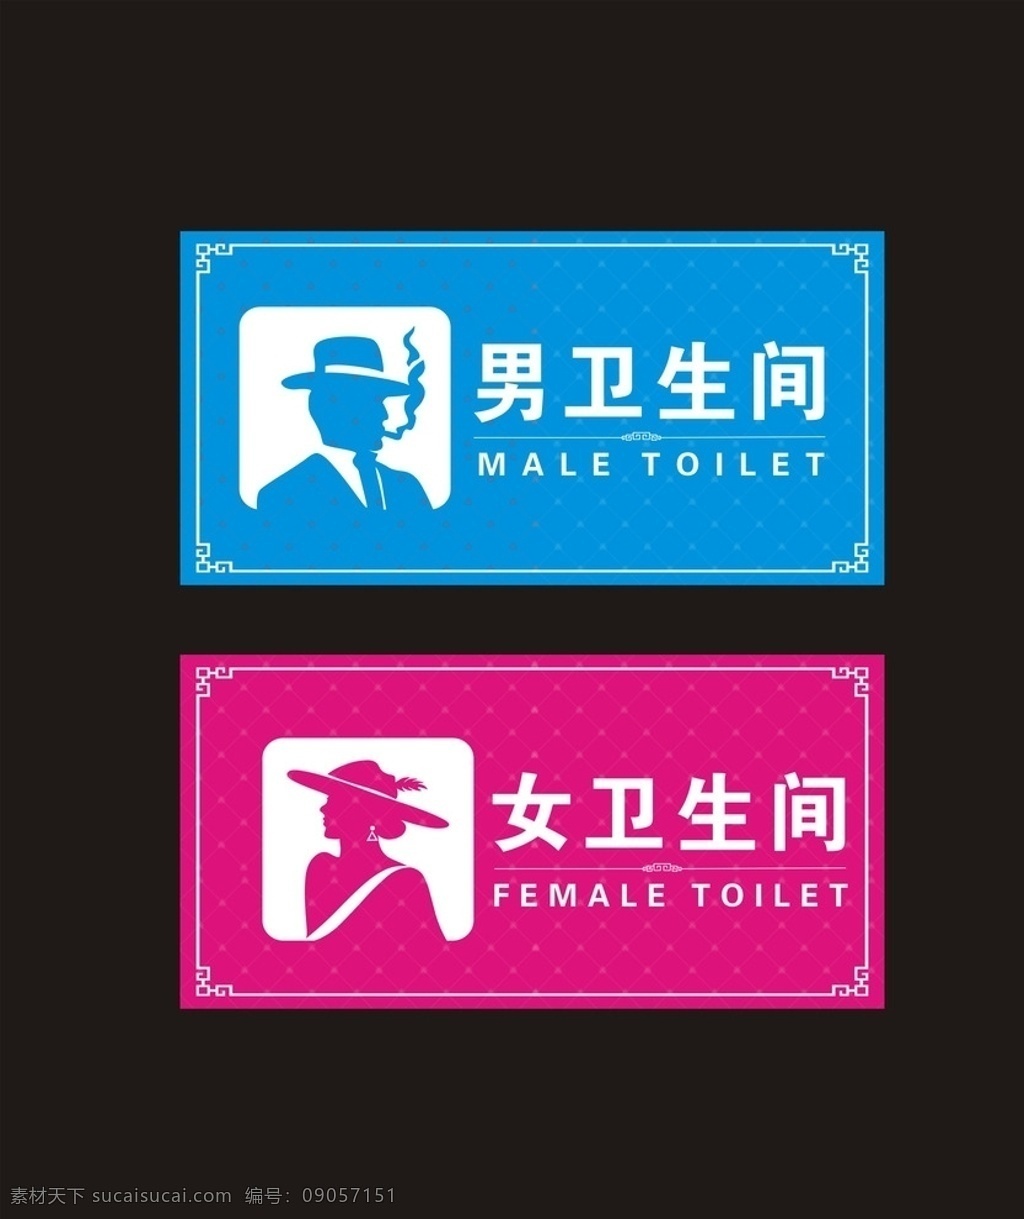 指示牌 厕所指示牌 卫生间指示牌 洗手间 洗手间指示牌 厕所 卫生间